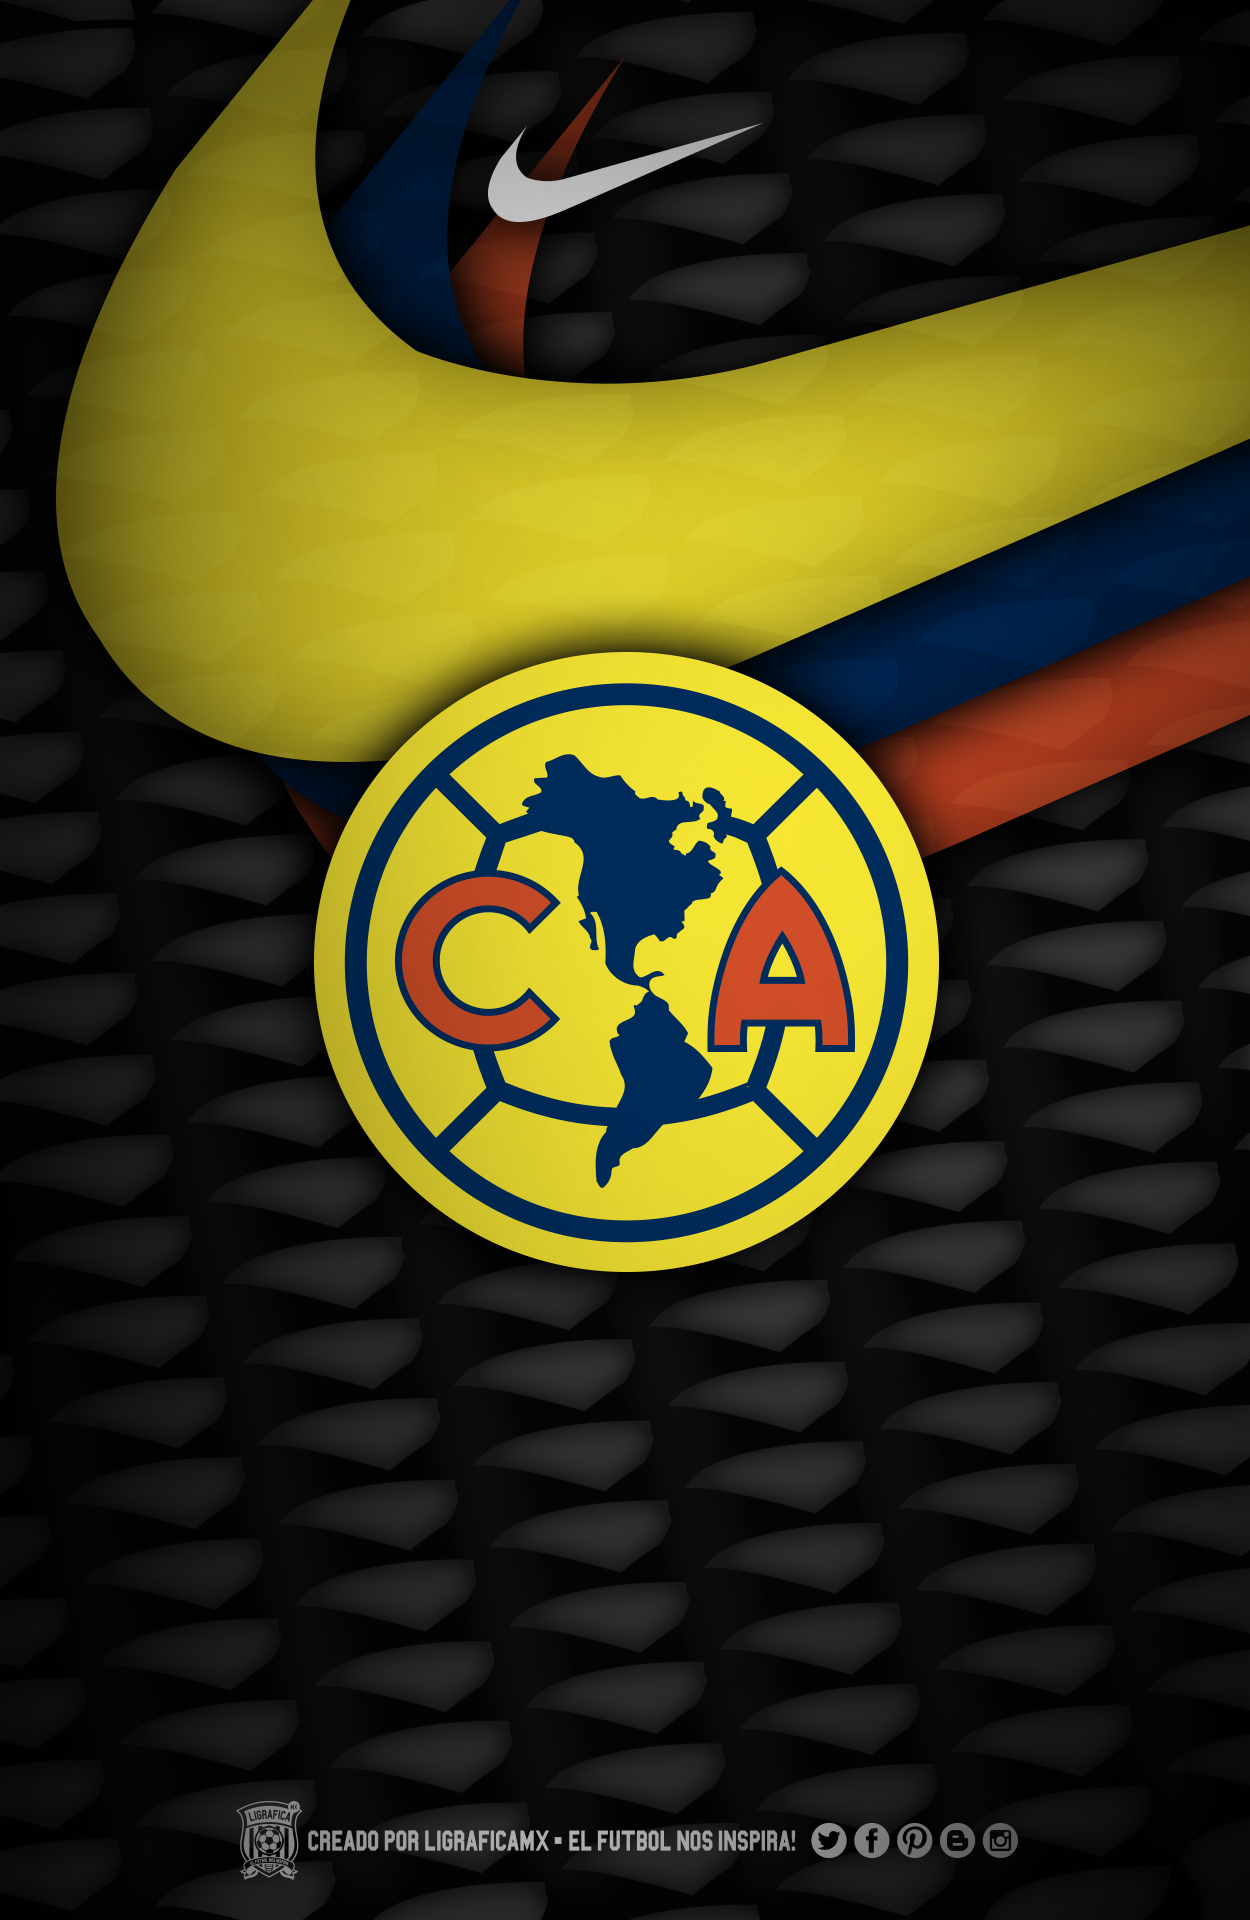 Best Club américa image. Club america, Aguilas, America